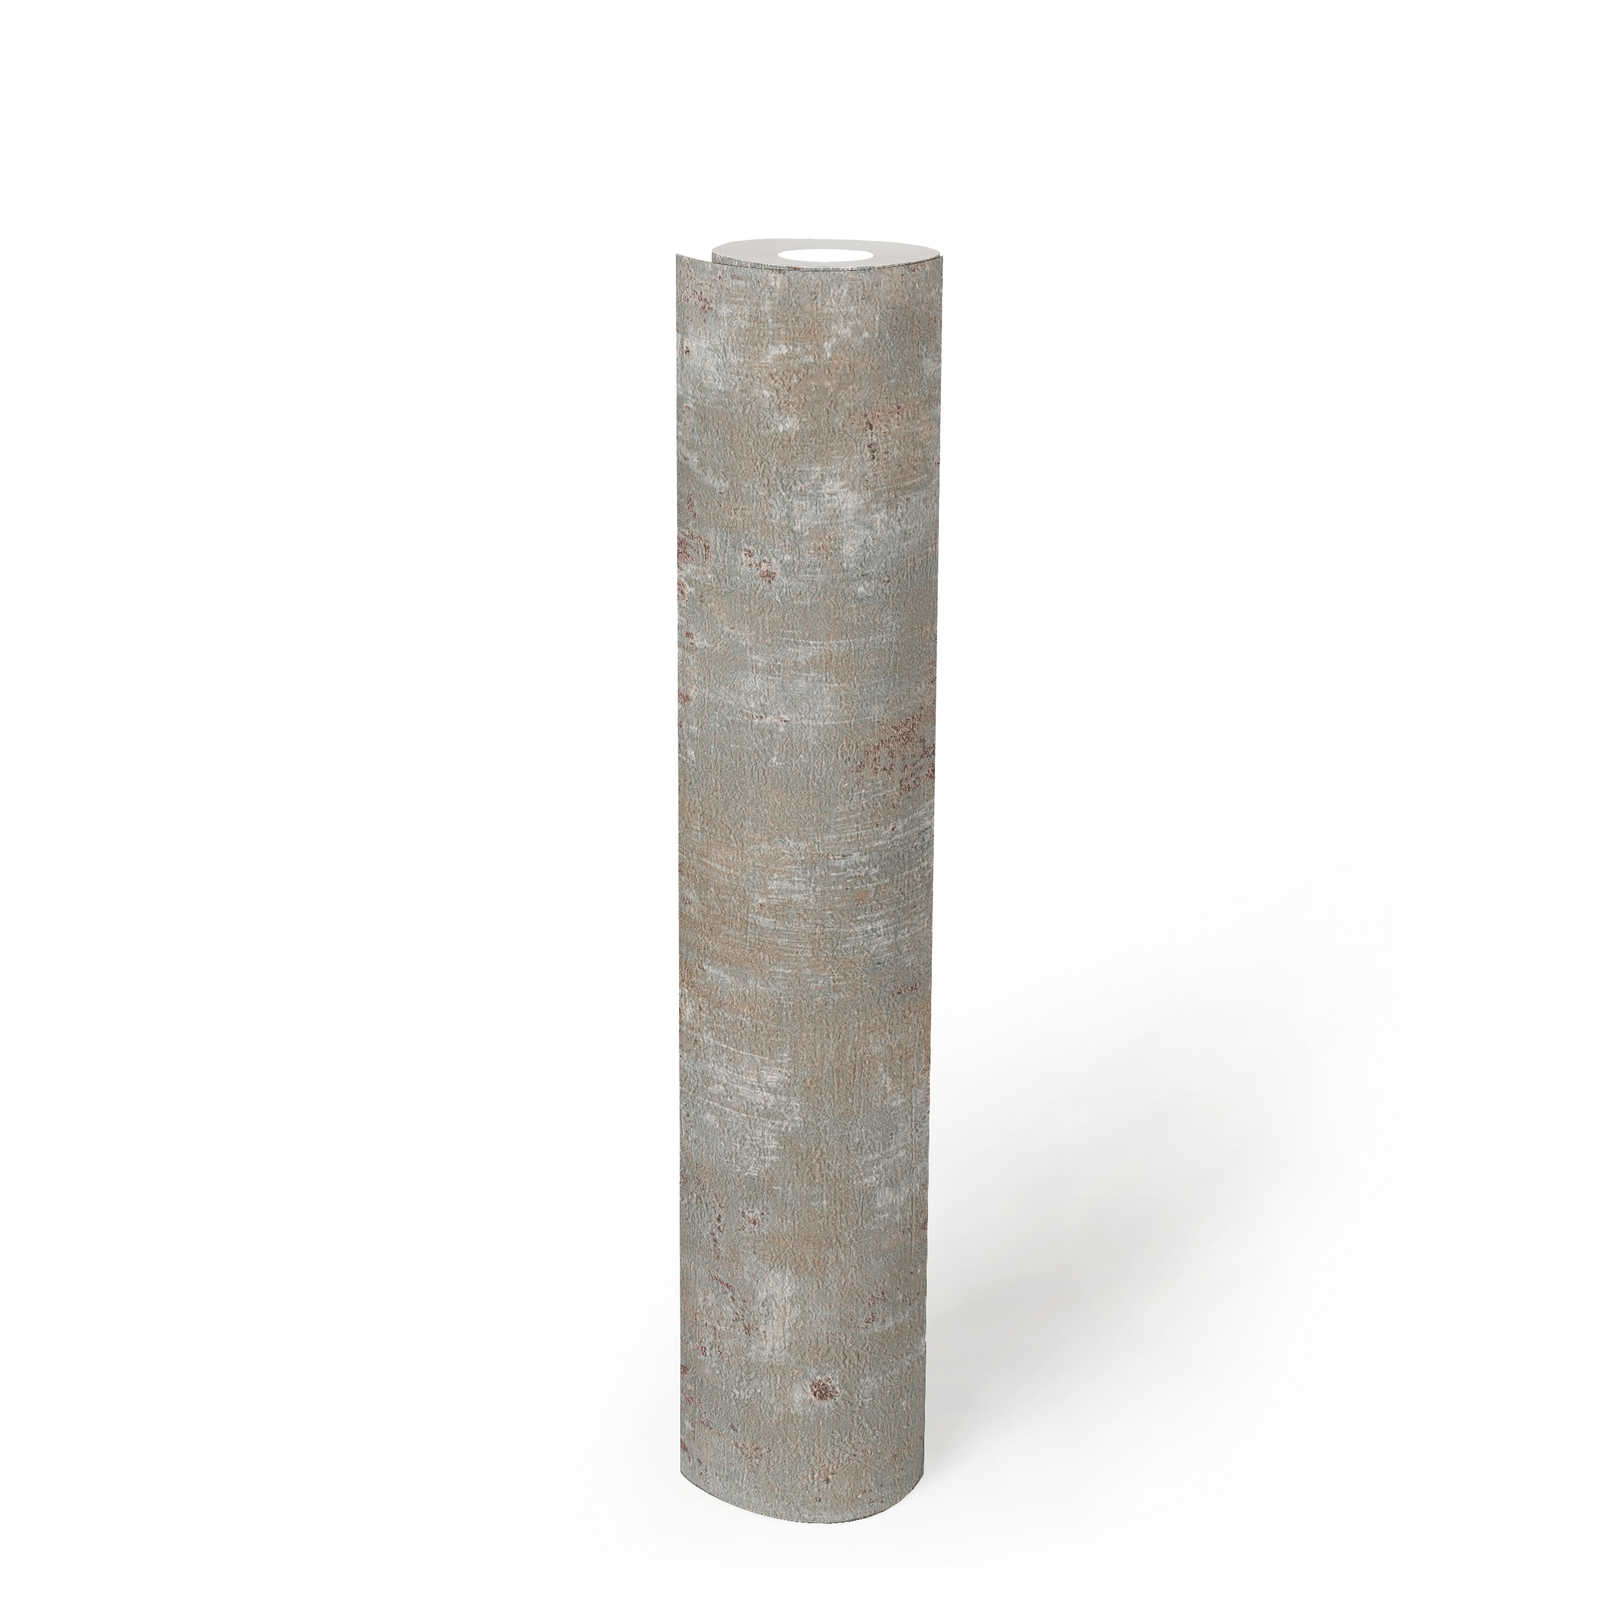             papier peint en papier intissé aspect usé avec accents métalliques - gris, bleu, bronze
        